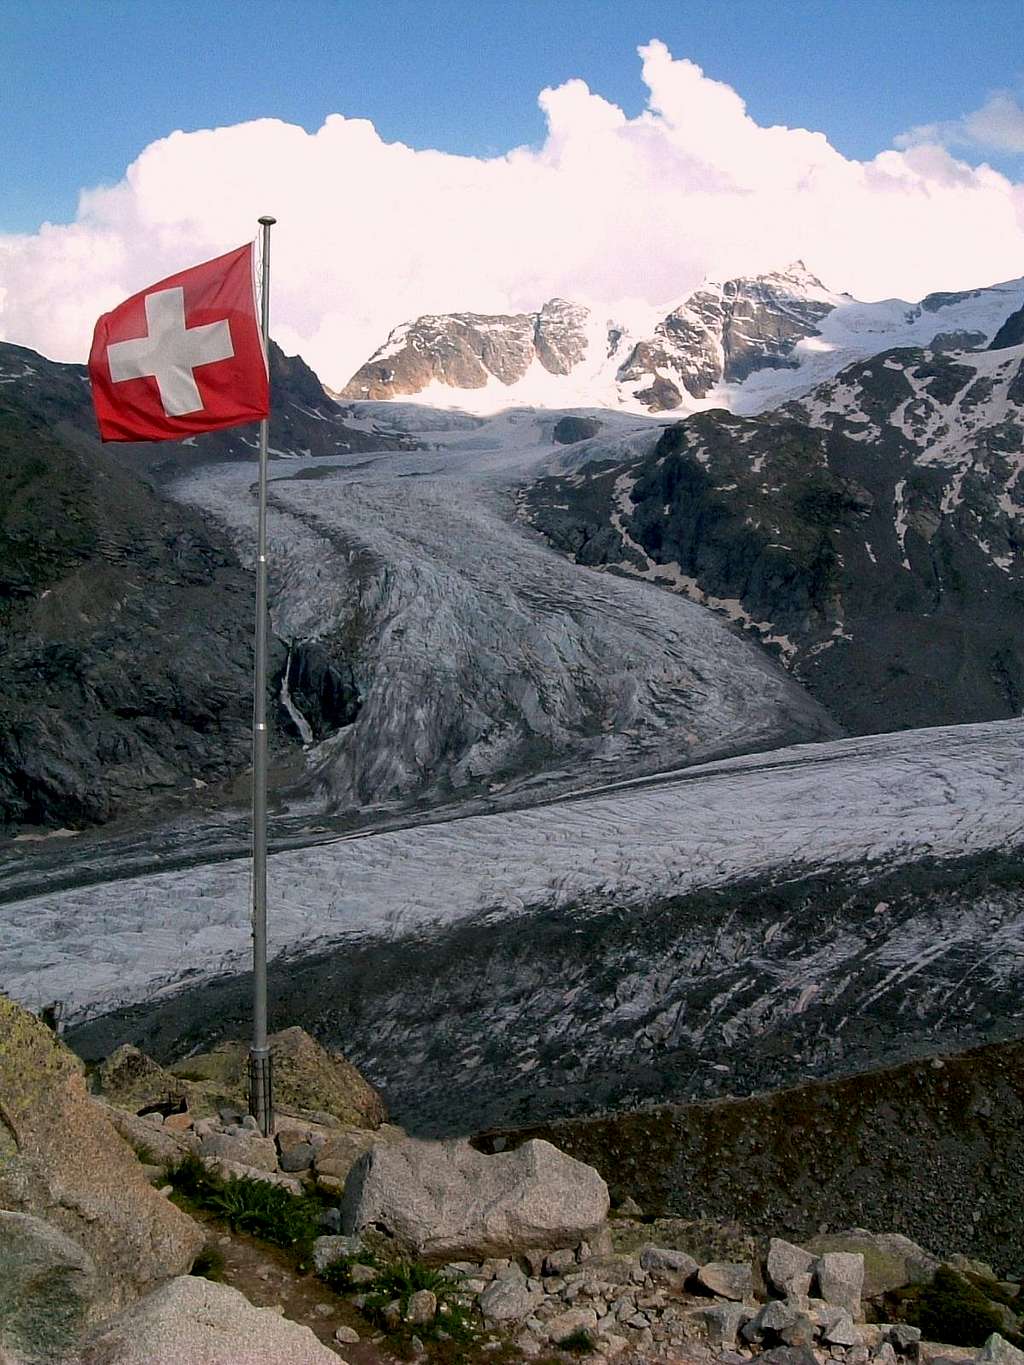 Morteratsch Glacier seen from Bovalhütte